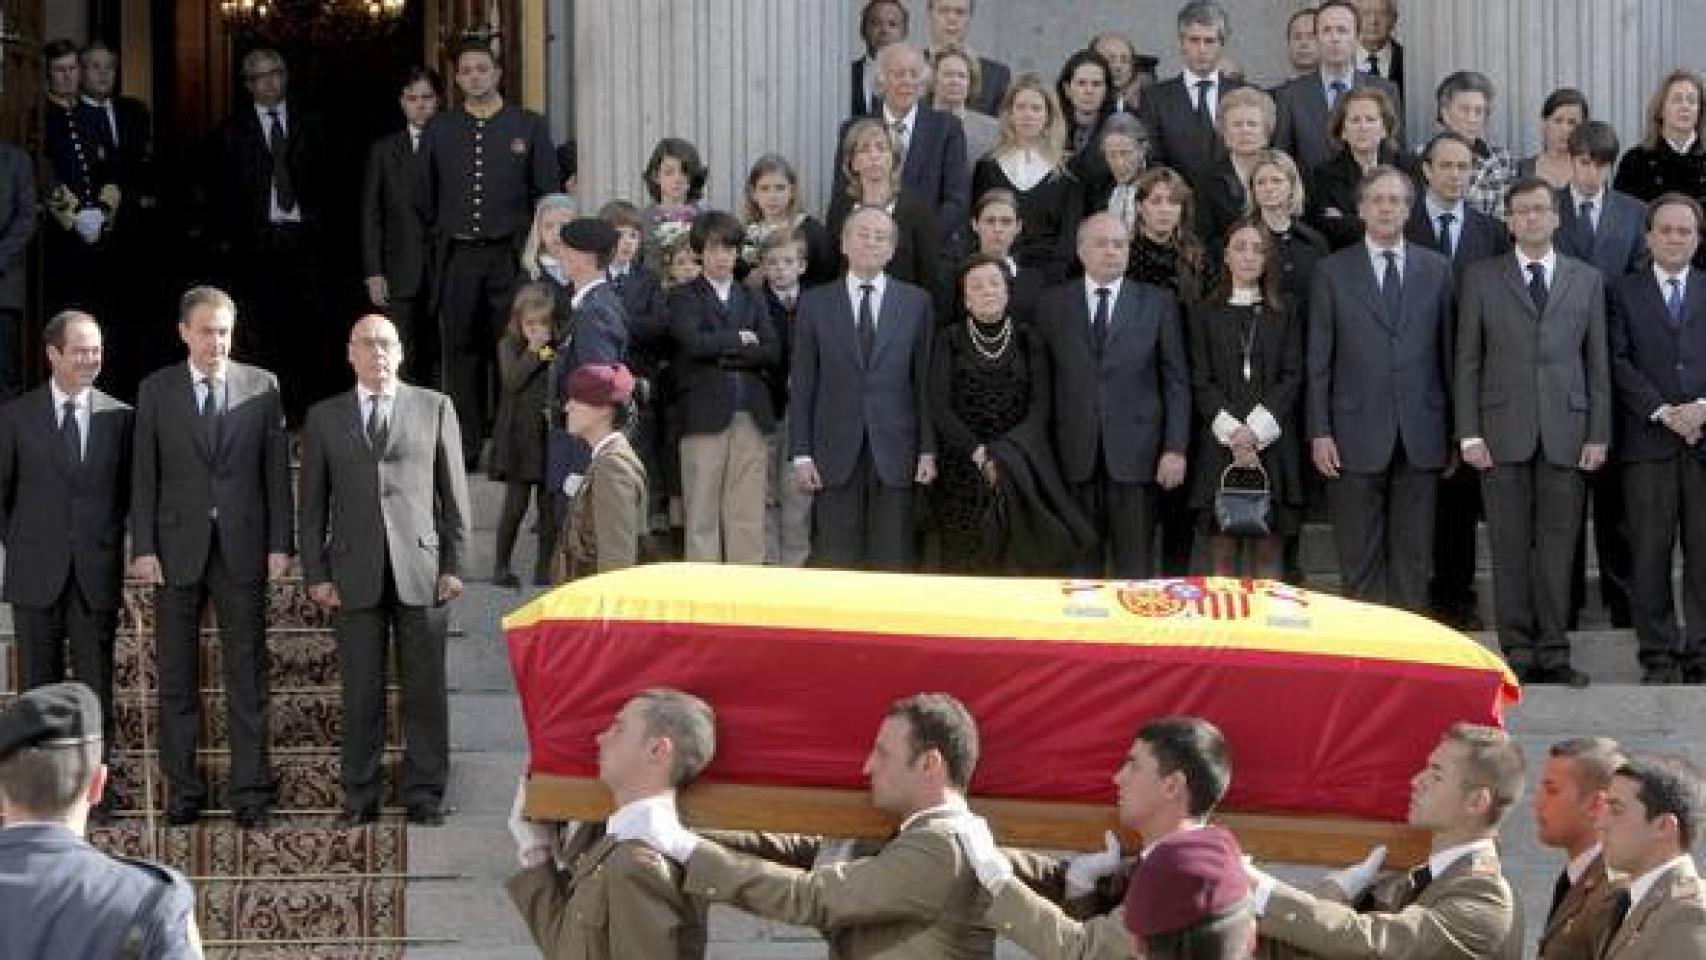 El 3 de mayo de 2008, Leopoldo Calvo-Sotelo fallecía repentinamente a los 82 años de edad. Los Reyes presidieron un funeral de Estado en las Cortes.